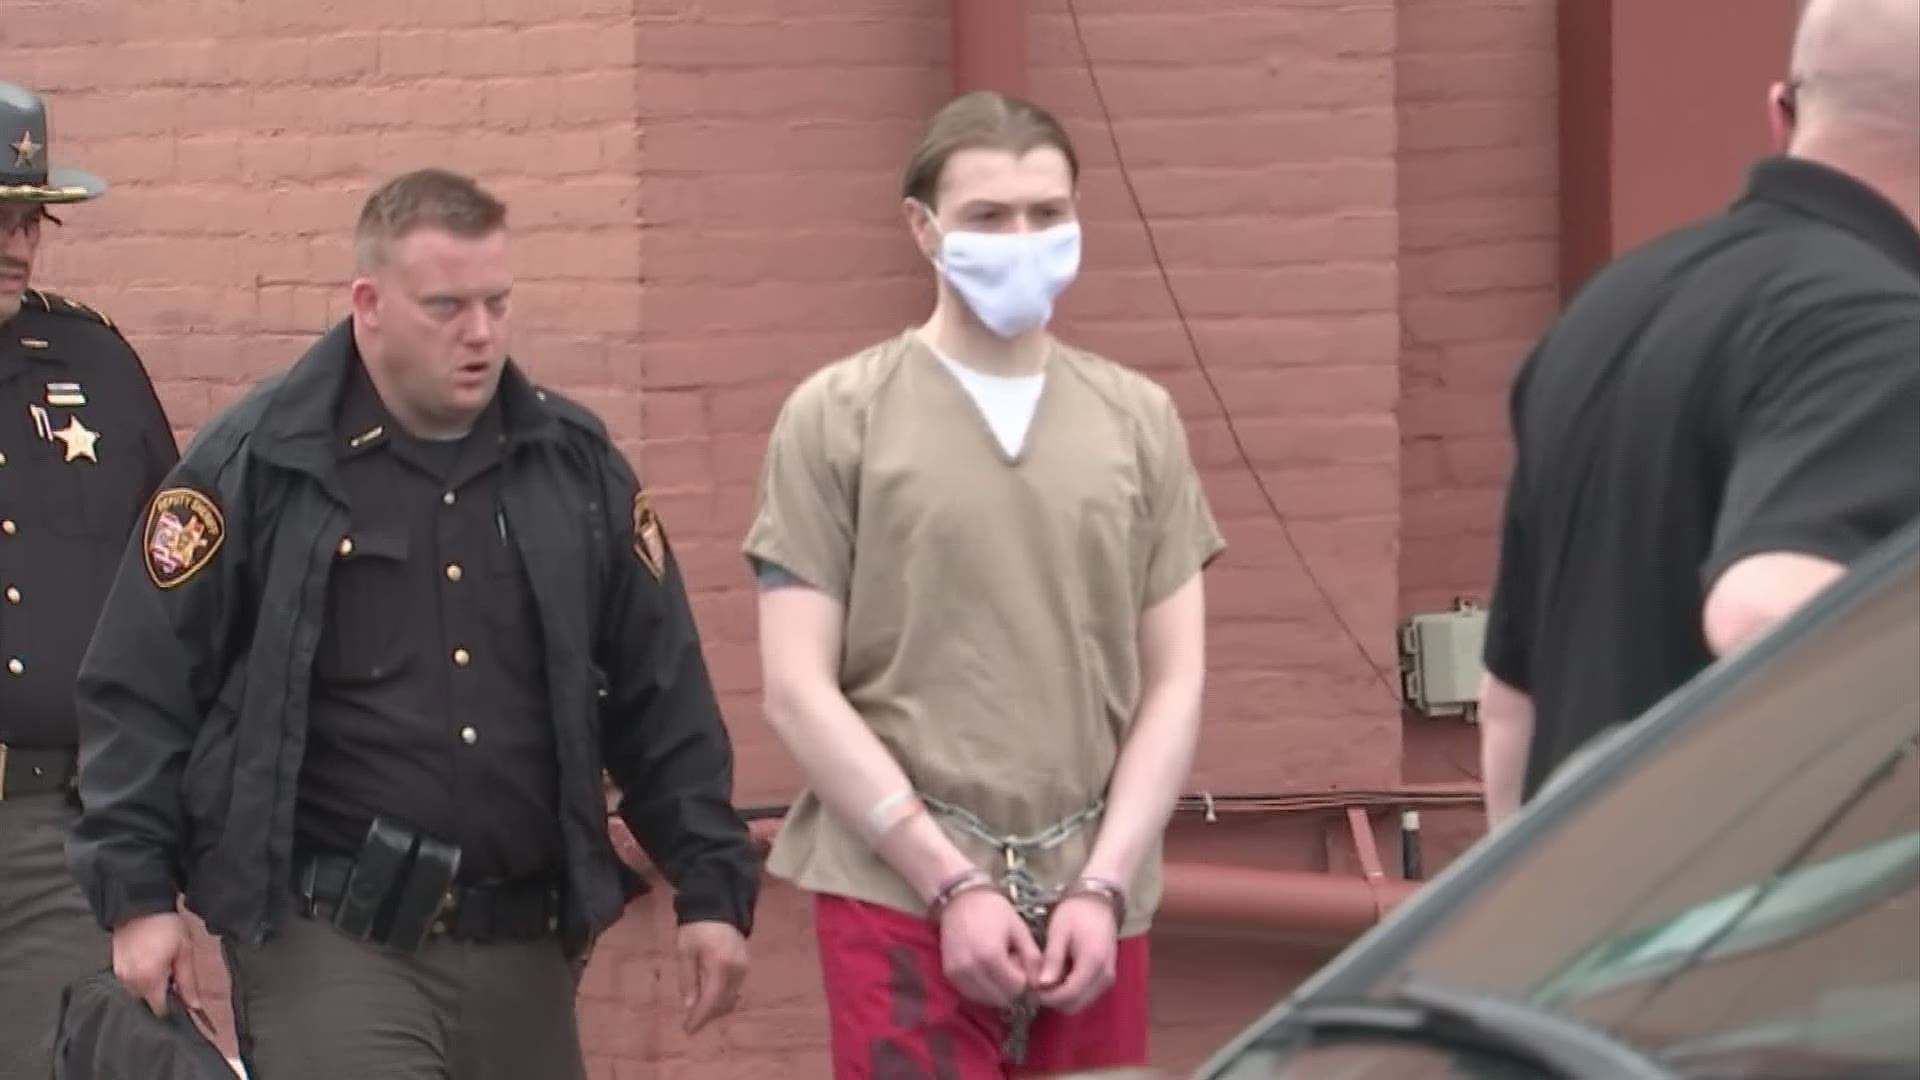 Edward 'Jake' Wagner pleads guilty in fatal shootings of Rhoden family